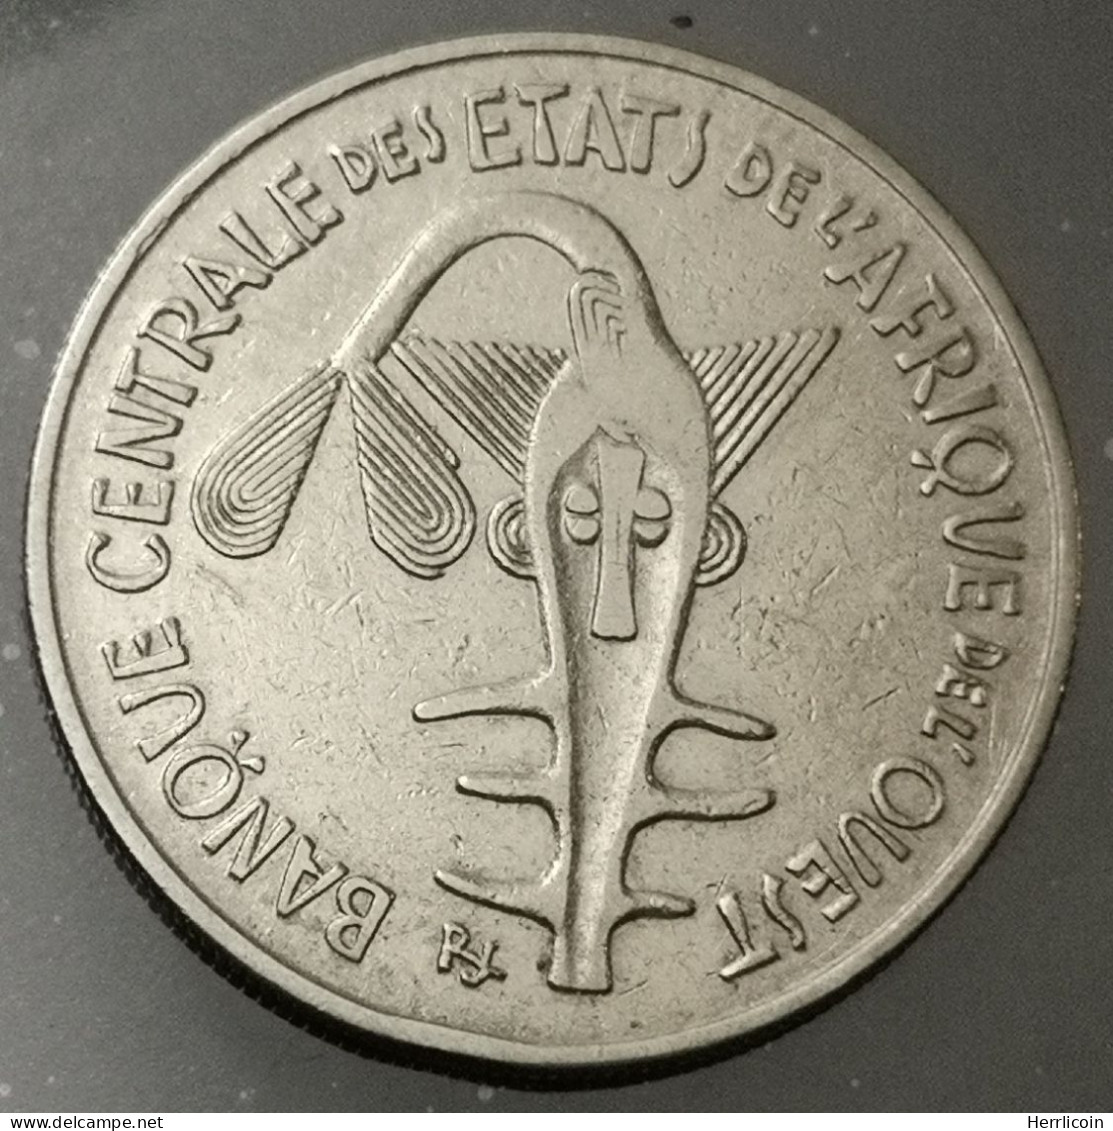 Monnaie Afrique De L'Ouest - 1976 - 100 Francs - Other - Africa